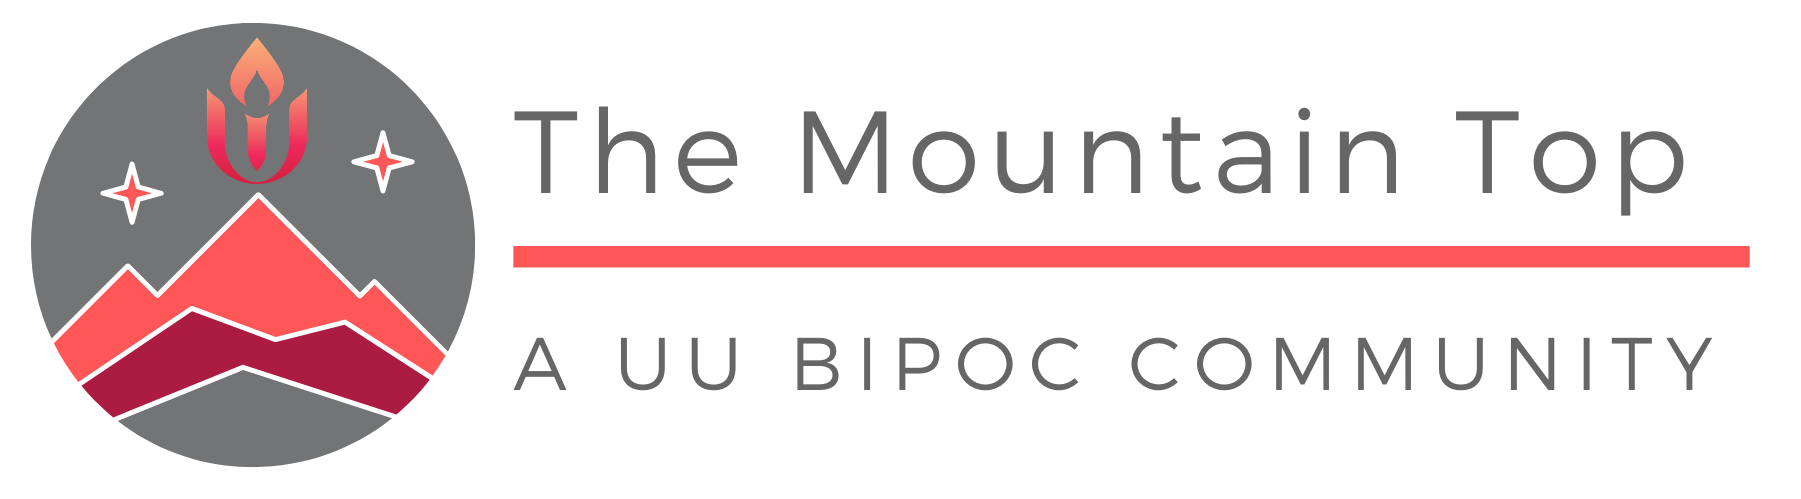 The Mountain Top